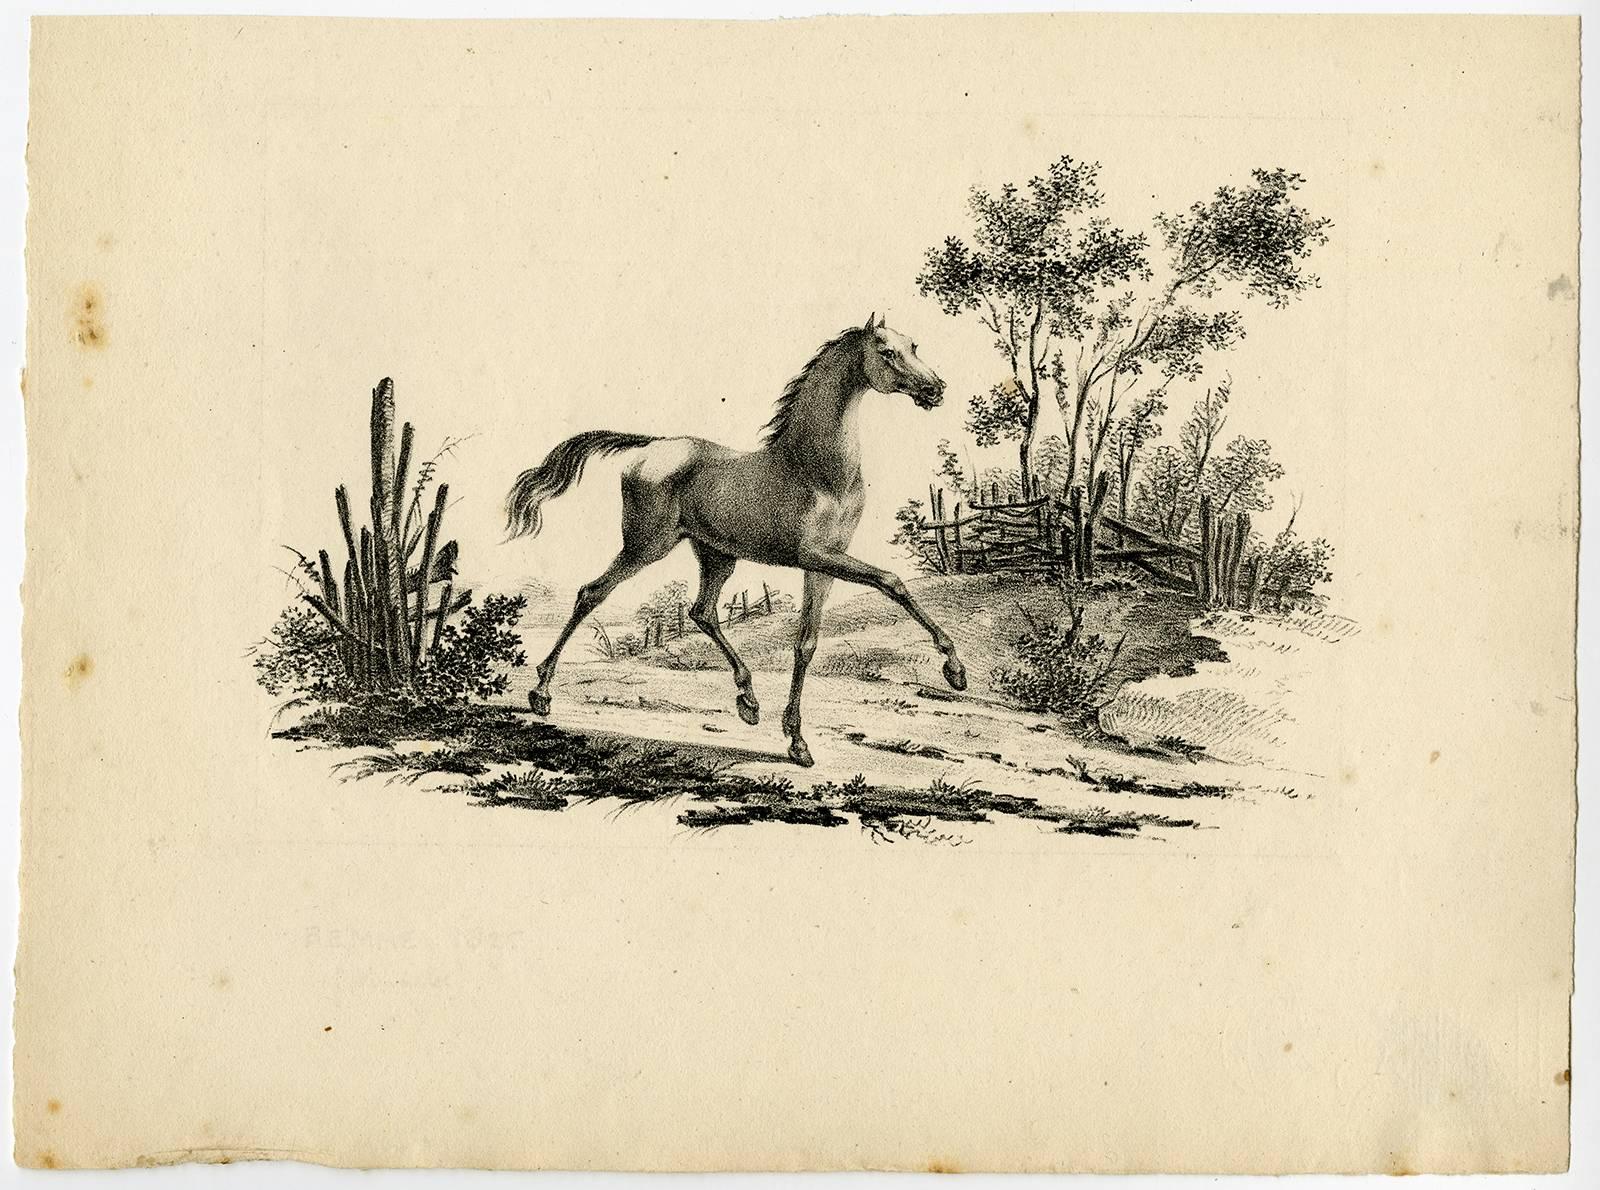 Etude de Cheveaux inventee & lithographie par Vinkeles et Bemme, Rotterdam 1825. - Print by Johannes Adriaansz Bemme